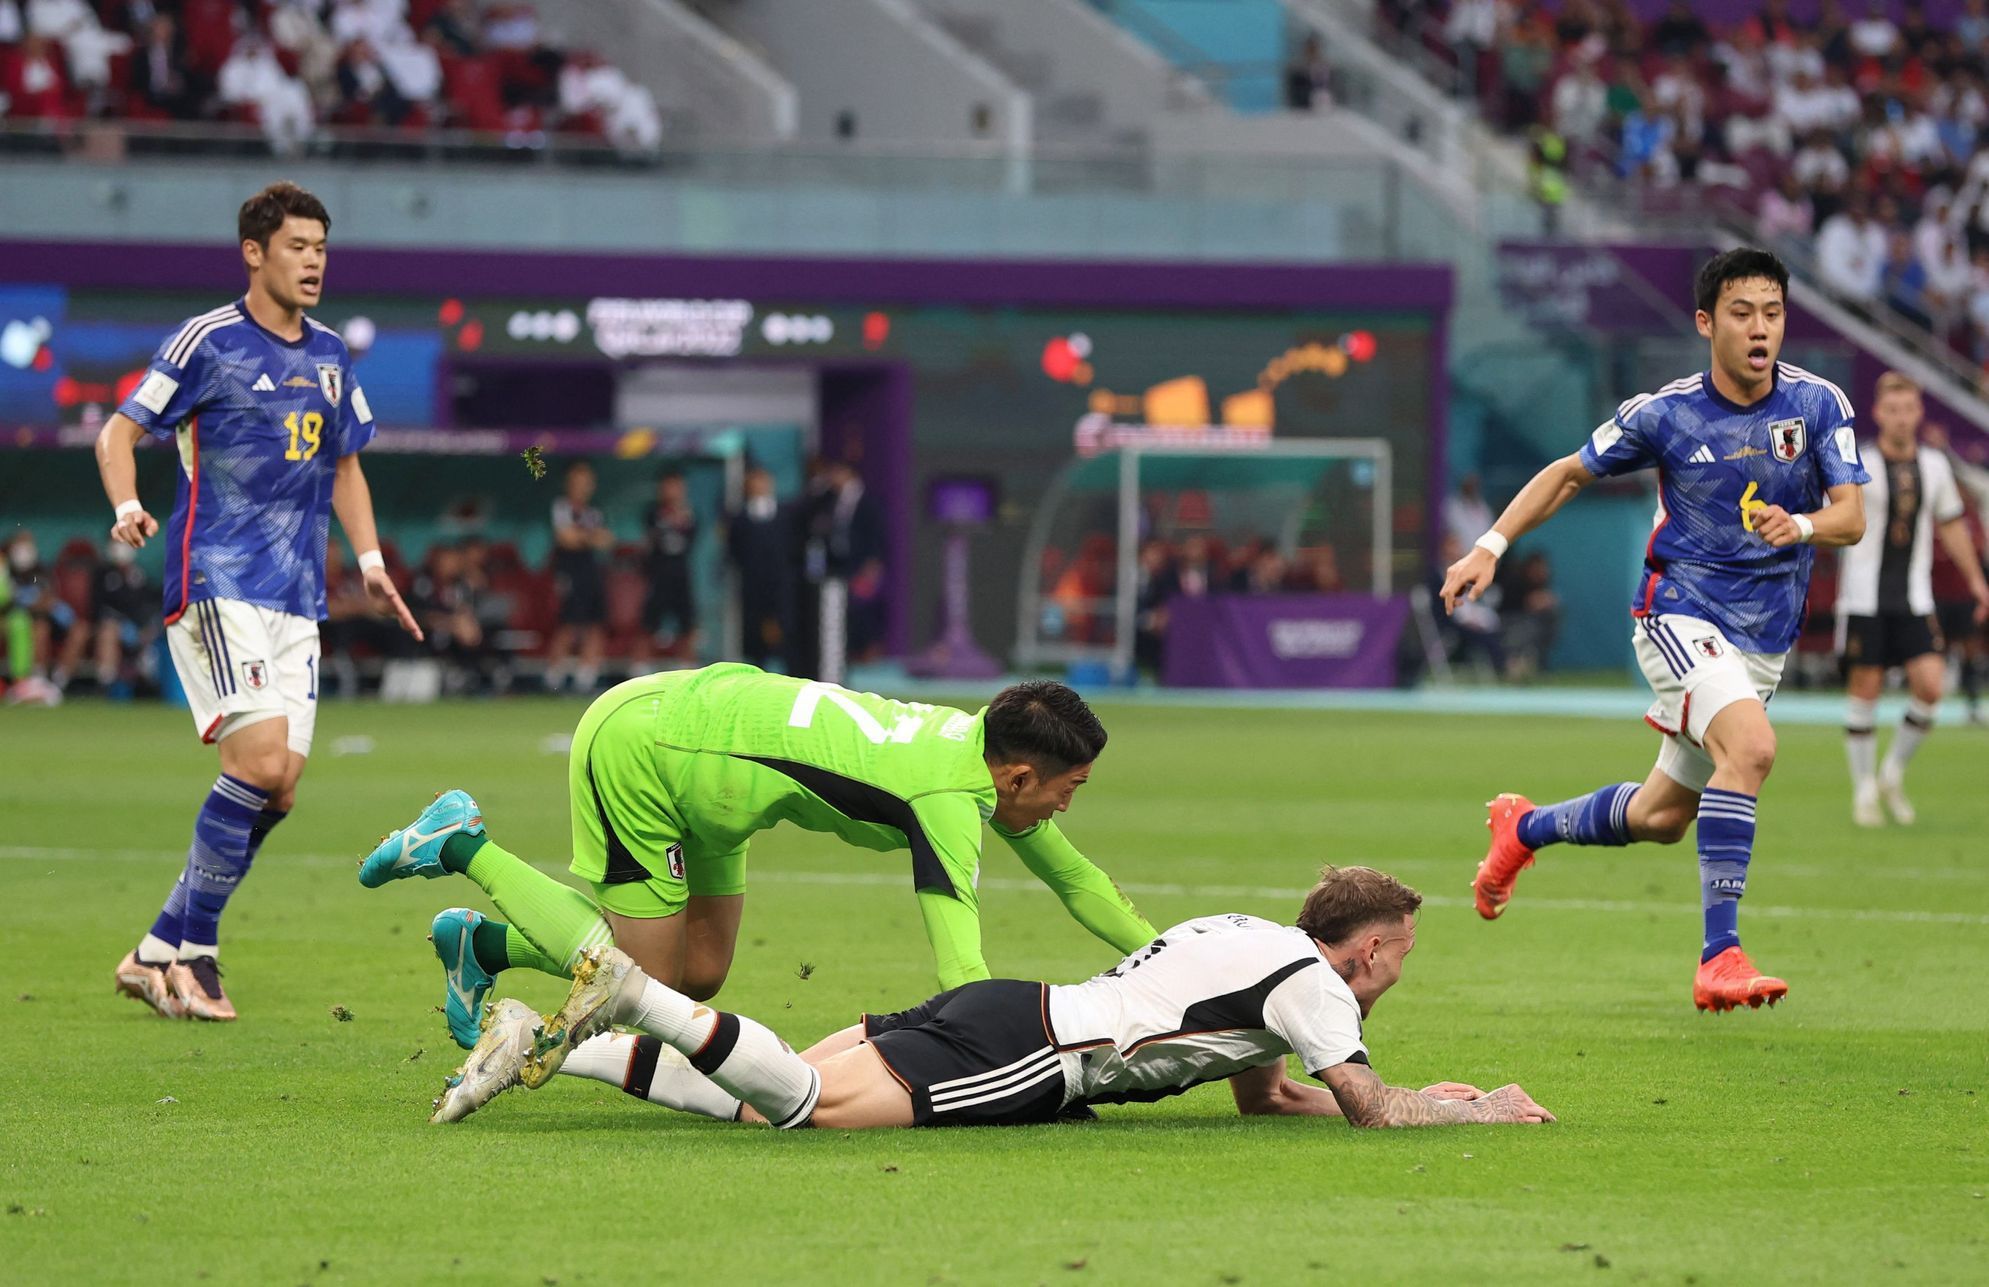 Brankář Šuiči Gonda penaltově fauluje Davida Rauma v utkání MS 2022 Německo - Japonsko